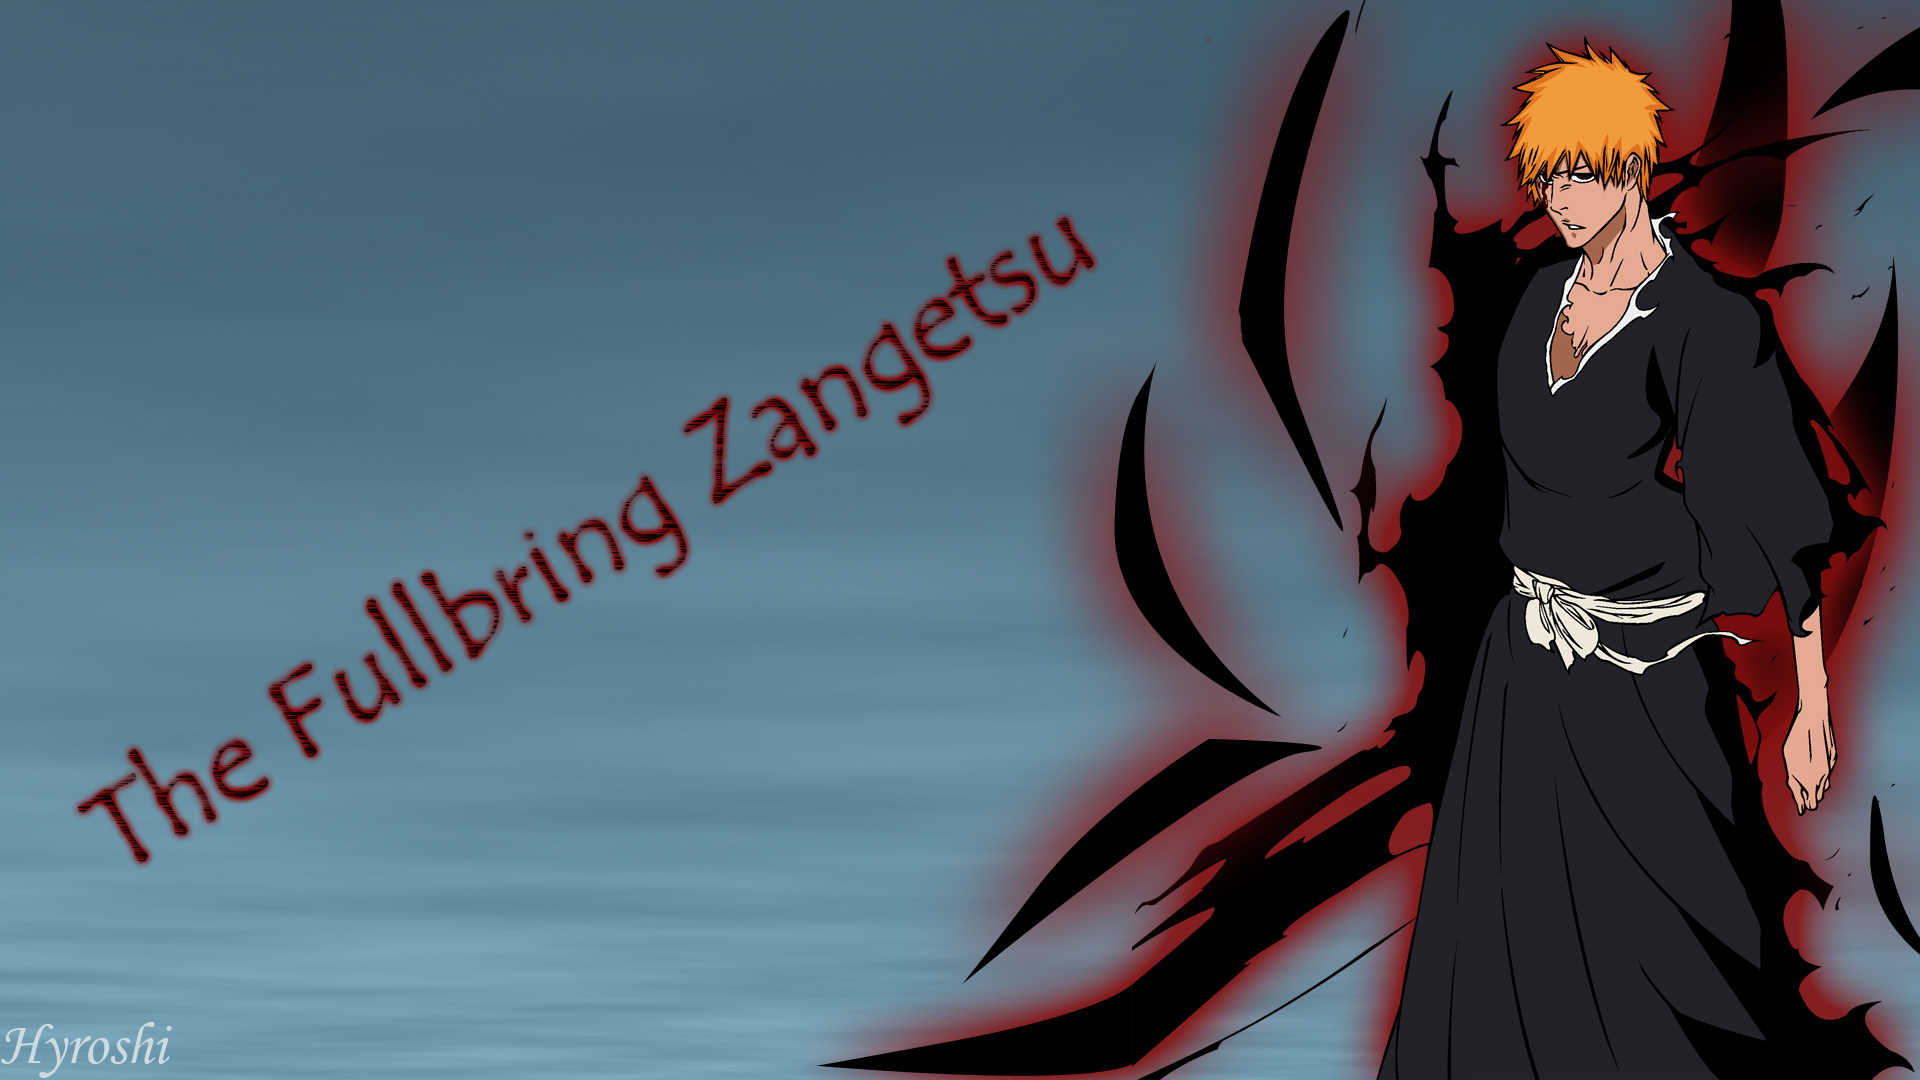 Ichigo The Fullbring Zangetsu By Hyroshi95